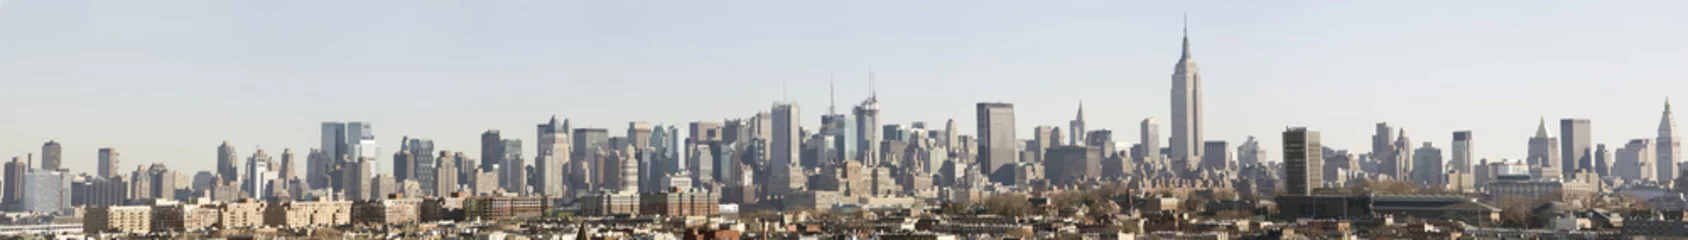 Fototapeten Manhattan skyline from the Jersey City bluffs, post 9-11 © Jose Gil